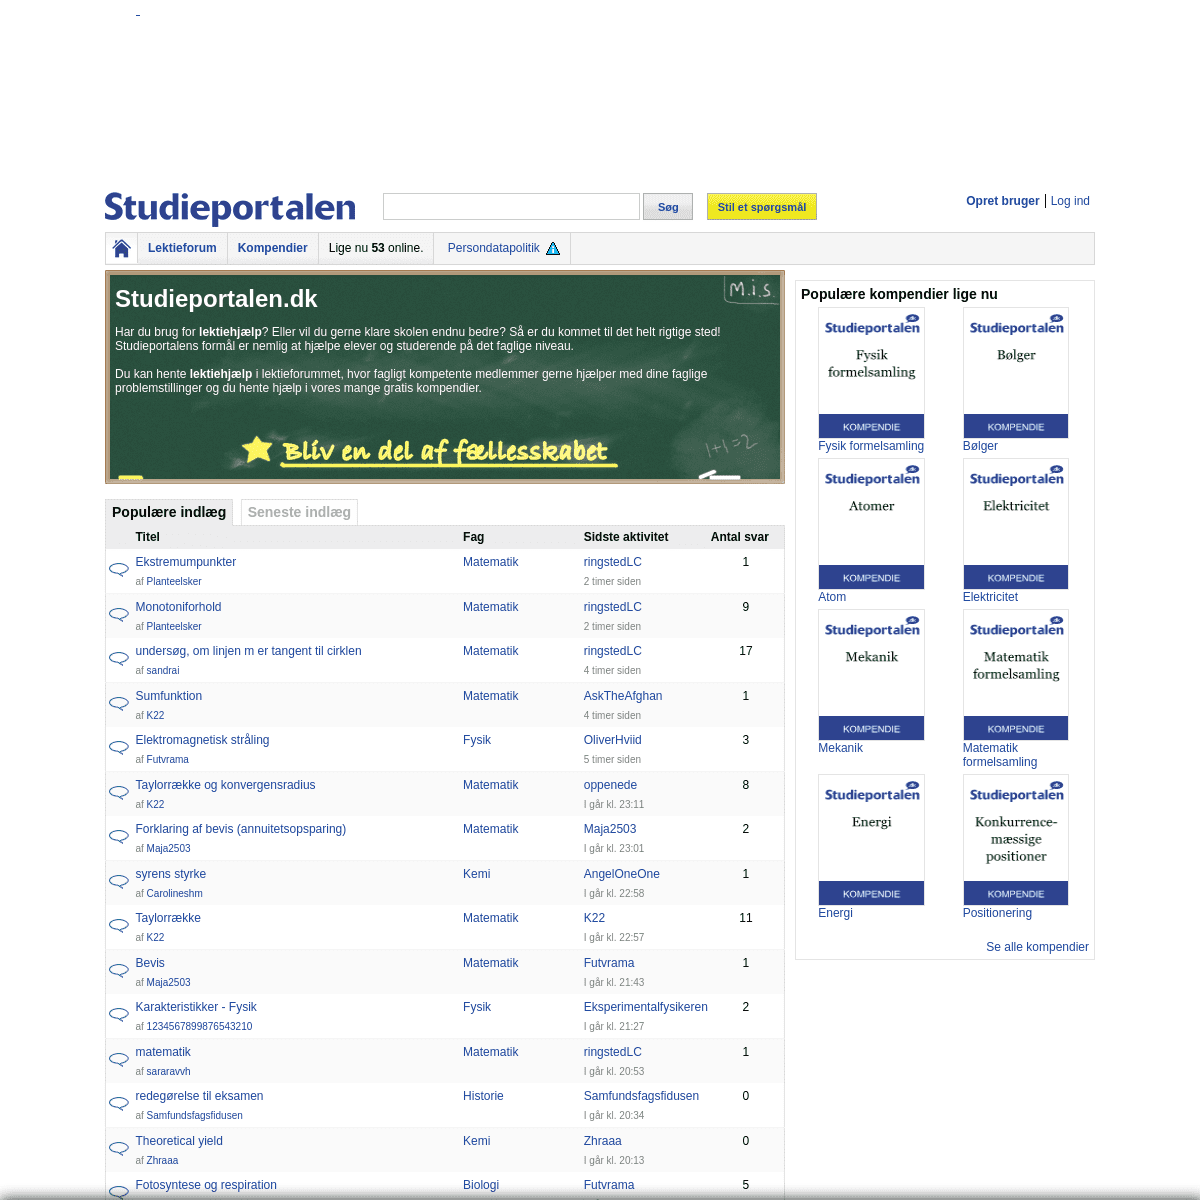 A complete backup of https://studieportalen.dk